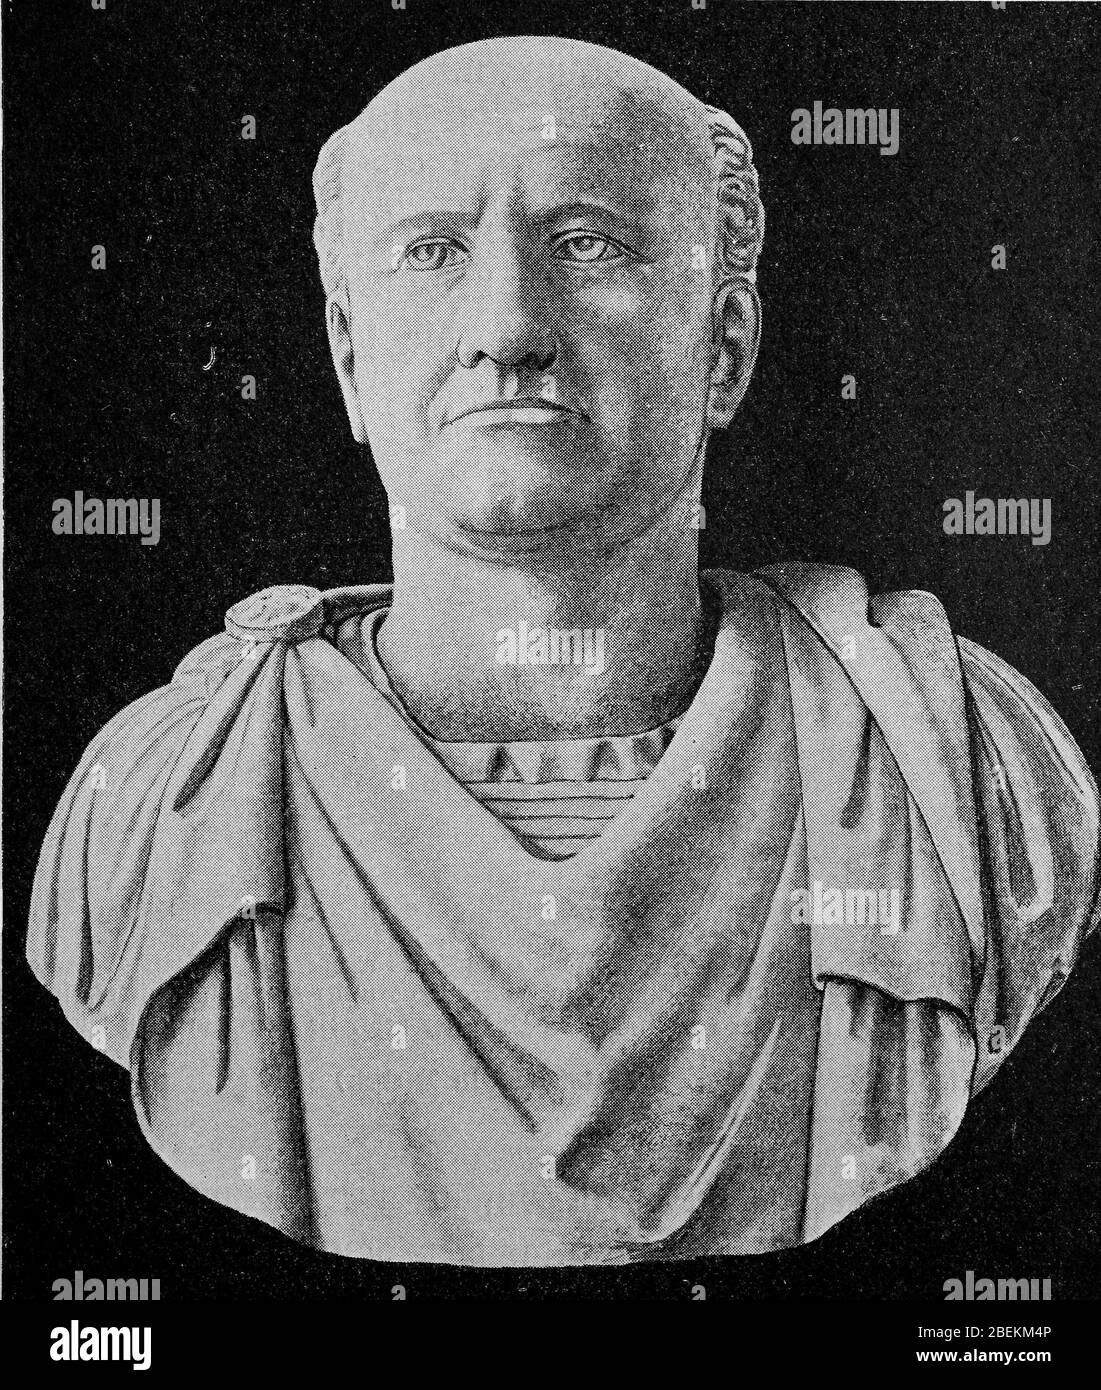 Vespasian, 17 November 9 - 23 Juni 79, war römischer Kaiser vom 1. Juli 69 bis zu seinem Tod. Sein Geburtsname war Titus Flavius Vespasianus, als Kaiser nahm er den Namen Kaiser Caesar Vespasianus Augustus / Vespasian, 17. Bis 23. November. Juni 79, war vom 1. Juli 69 bis zu seinem Tod römischer Kaiser. Sein Name war Titus Flavius Vespasianus, als Kaiser führte er den Namen Imperator Caesar Vespasianus Augustus, historisch, digital verbesserte Reproduktion eines Originals aus dem 19. Jahrhundert / digitale Reproduktion einer Originalvorlage aus dem 19. Jahrhundert Stockfoto